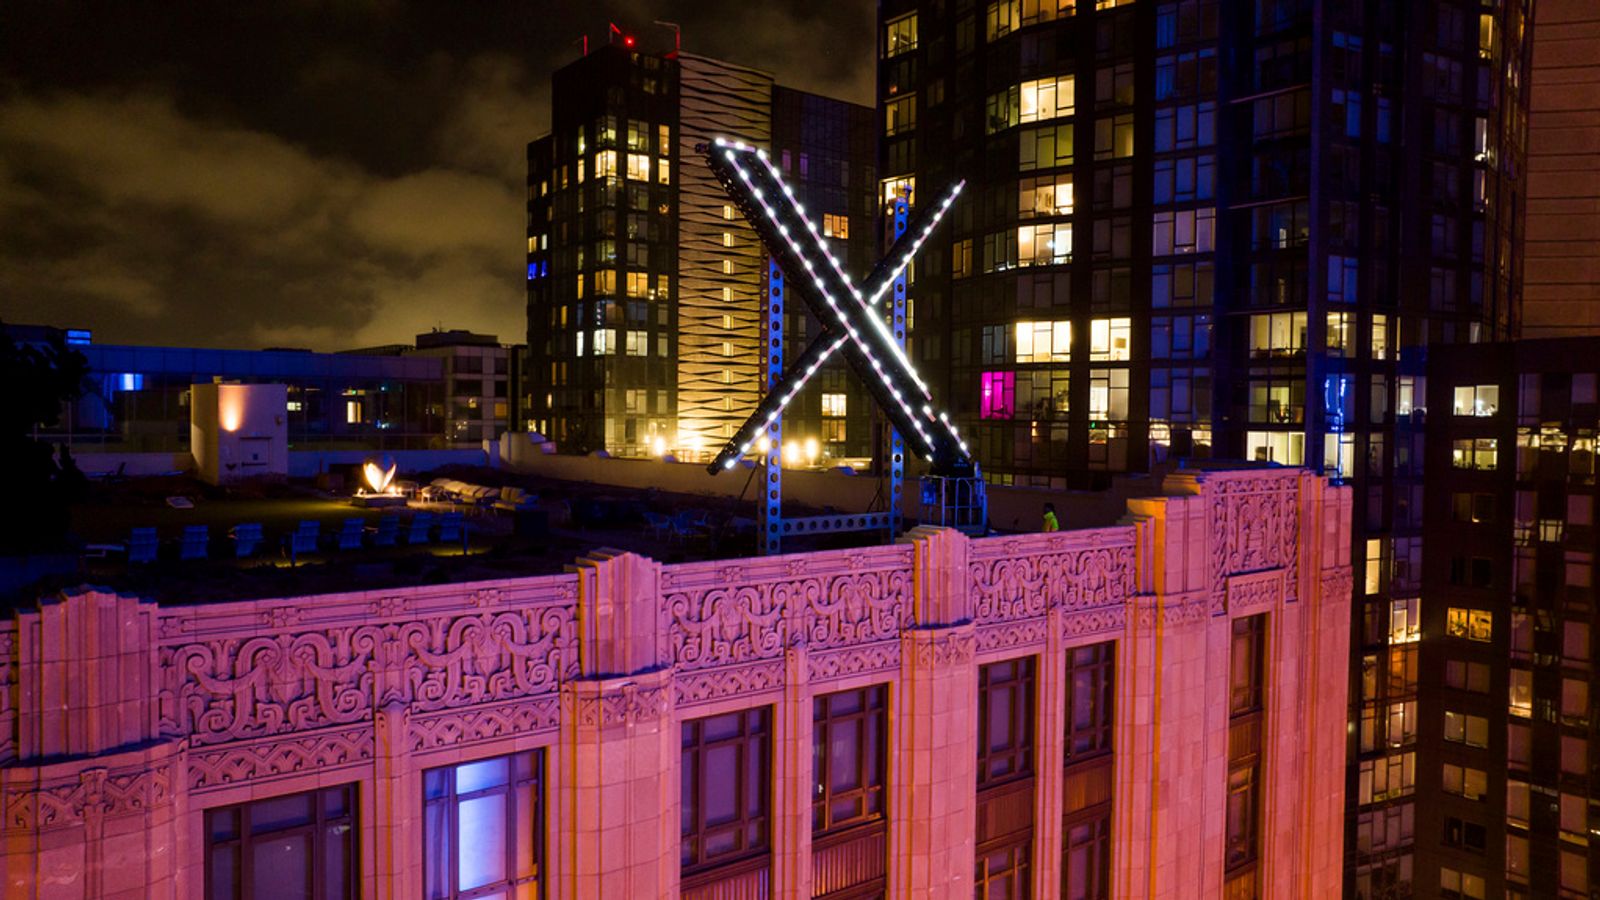 Le signe X clignotant géant retiré du siège social de Twitter à San Francisco après des plaintes |  Actualités scientifiques et techniques